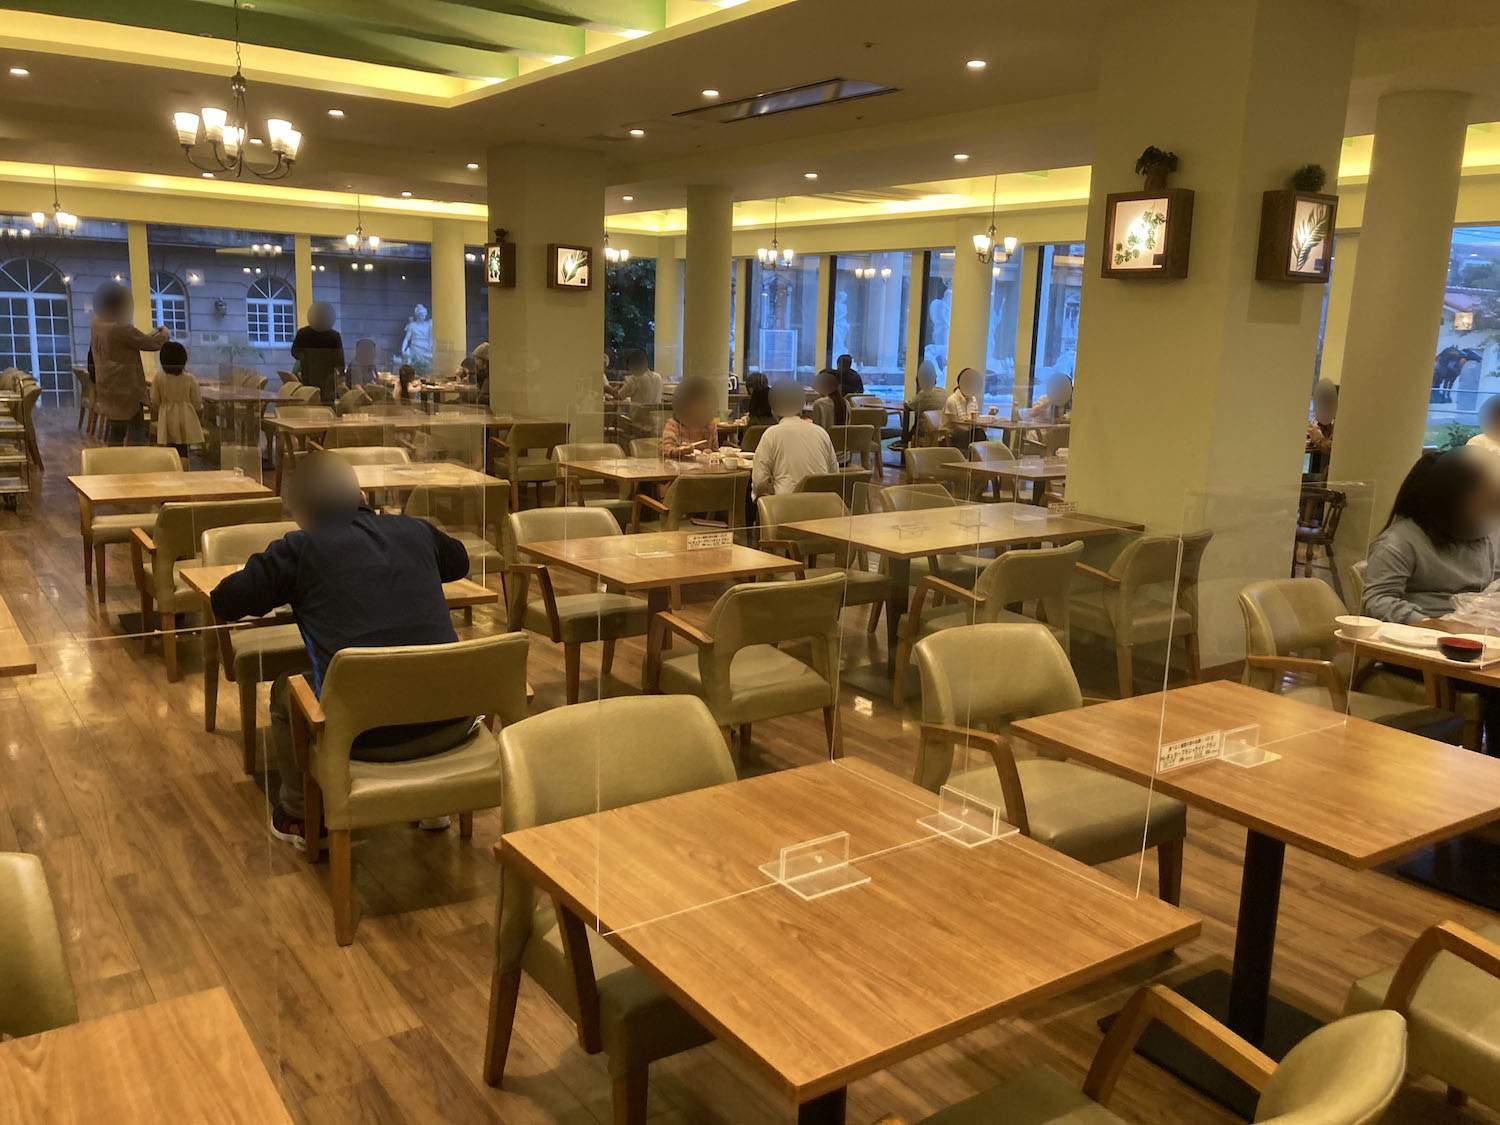 <a href="https://pacifichotel.jp/restaurant-top/">ガーデンレストラン竜潭（りゅうたん）</a>。<br>ボチボチ広めでキャパは2-300名くらい入りそうでした。<br>でも繁忙期の朝食時は混雑するとのフロント情報あり。